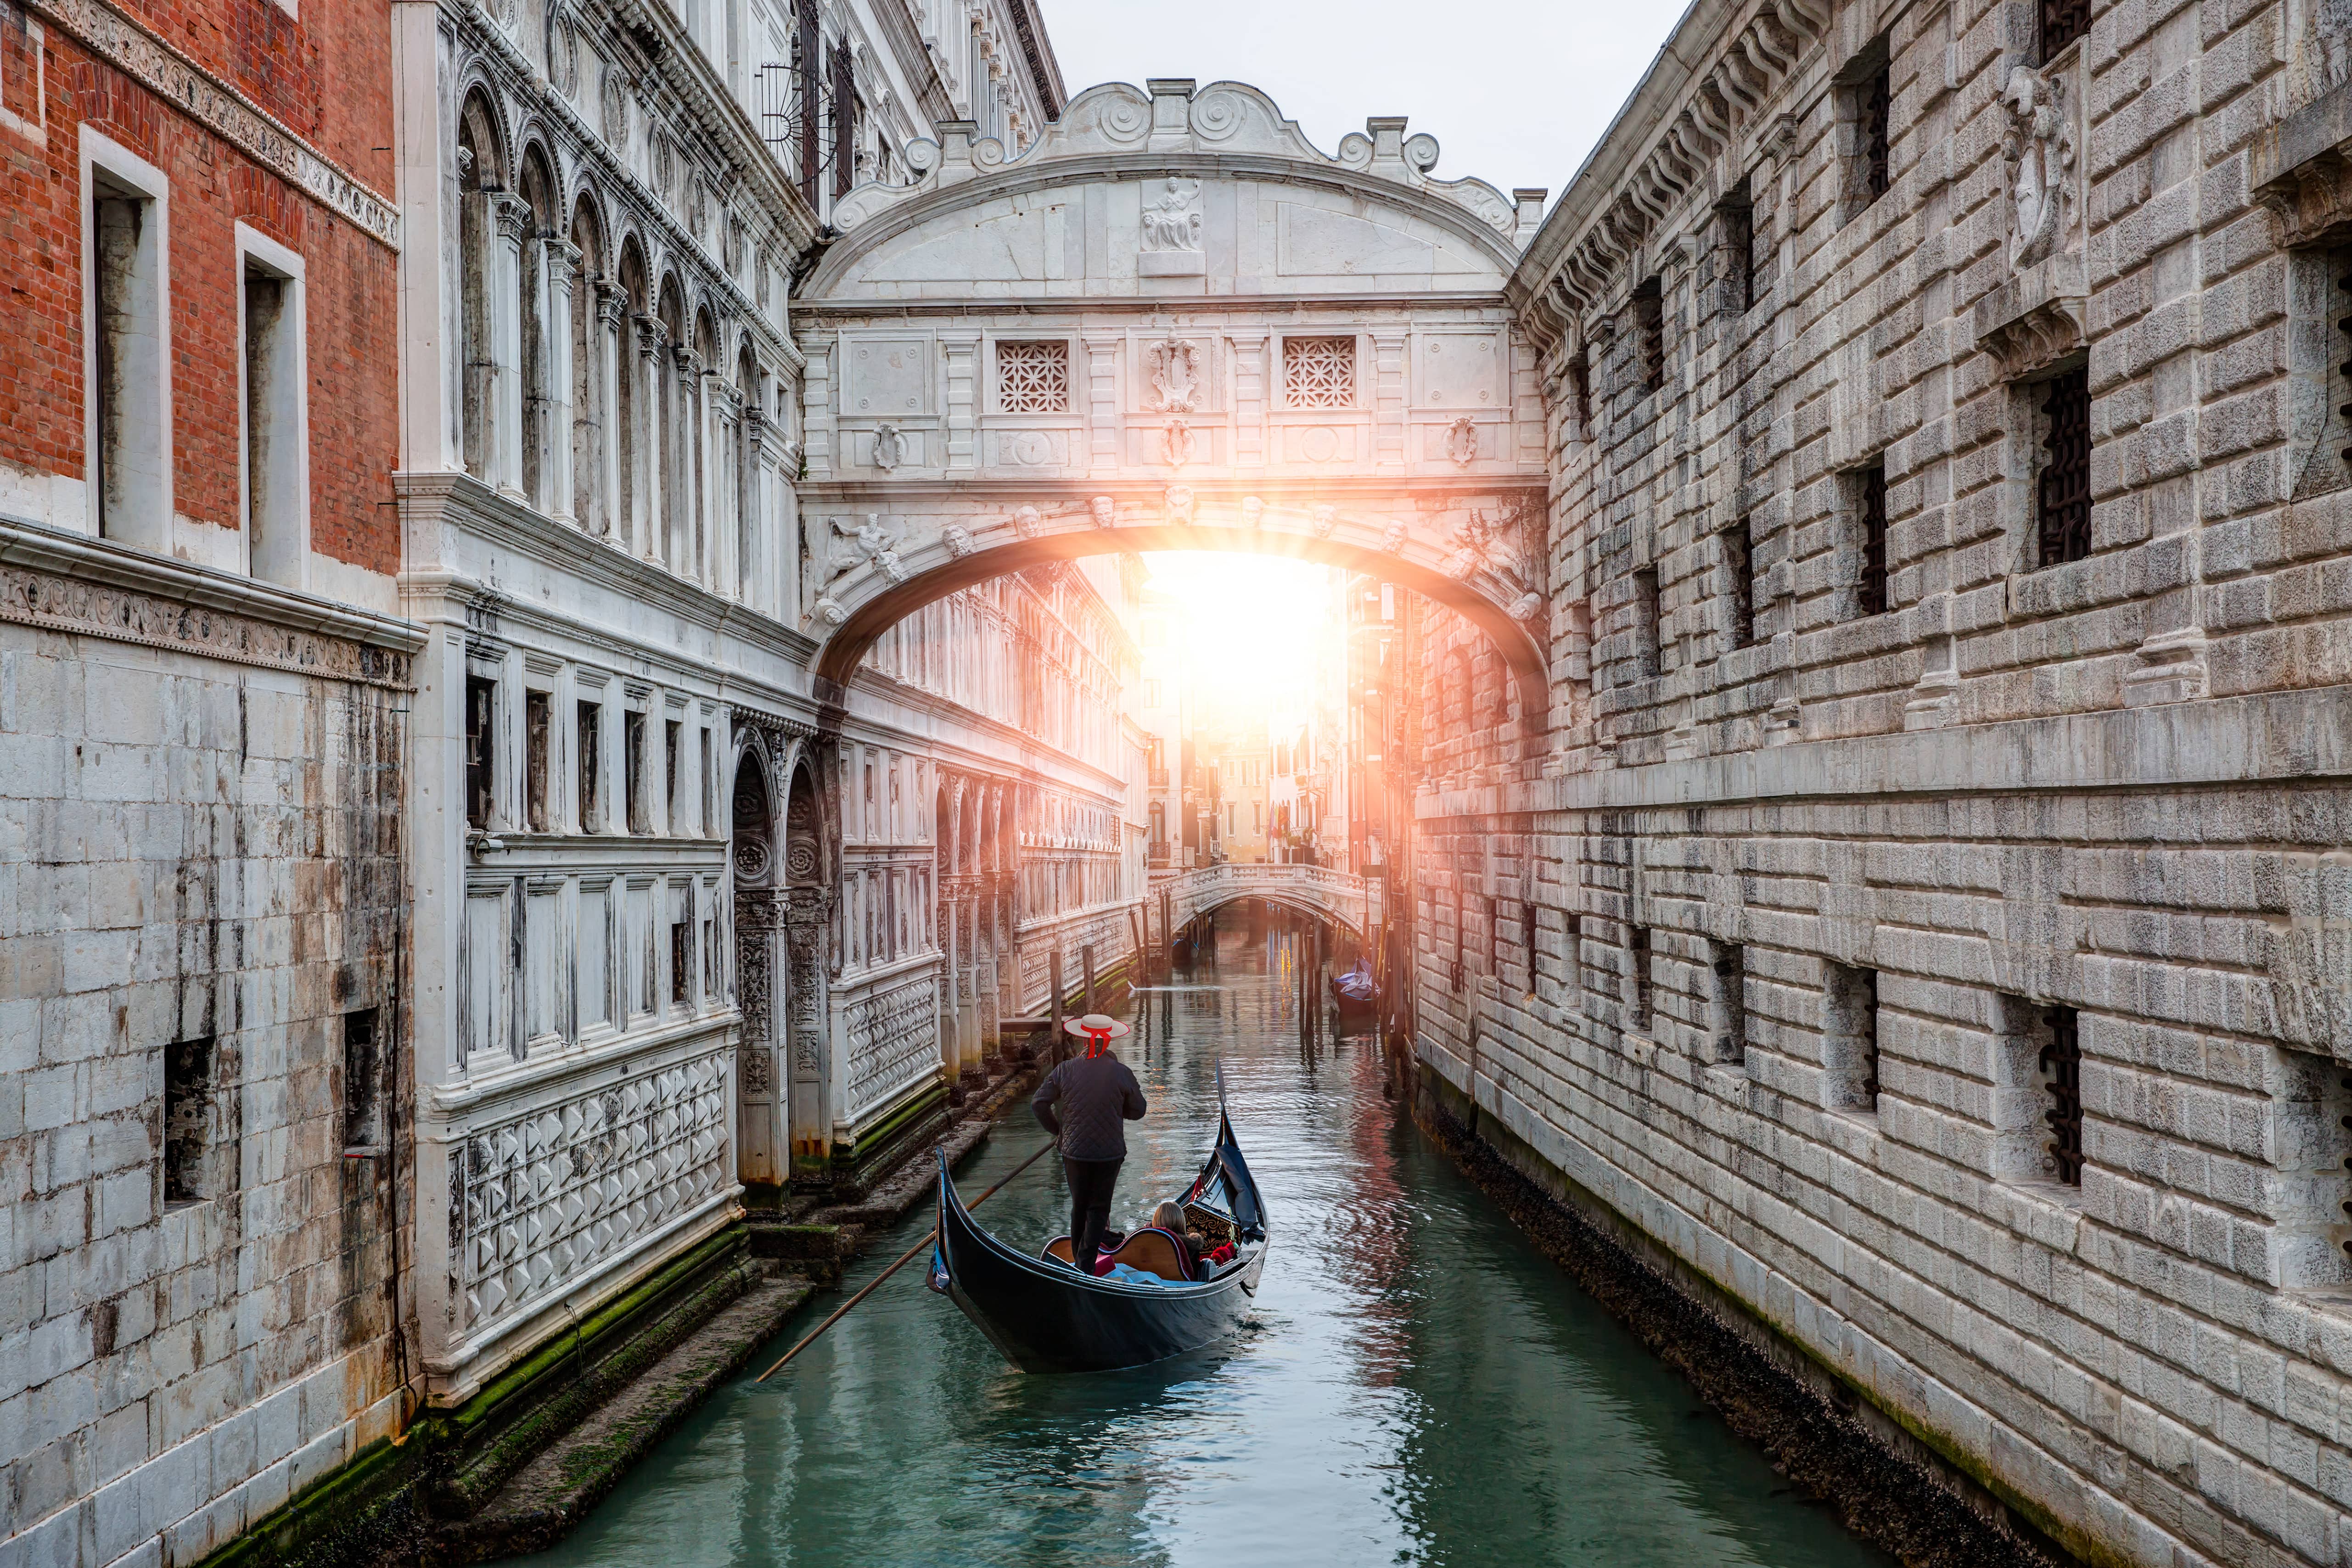 Удивительный город венеция. Венеция. Мост вздохов. Дворец дожей в Венеции мост вздохов. Мост Риальто Венеция. Мост вздохов Венеция Легенда.